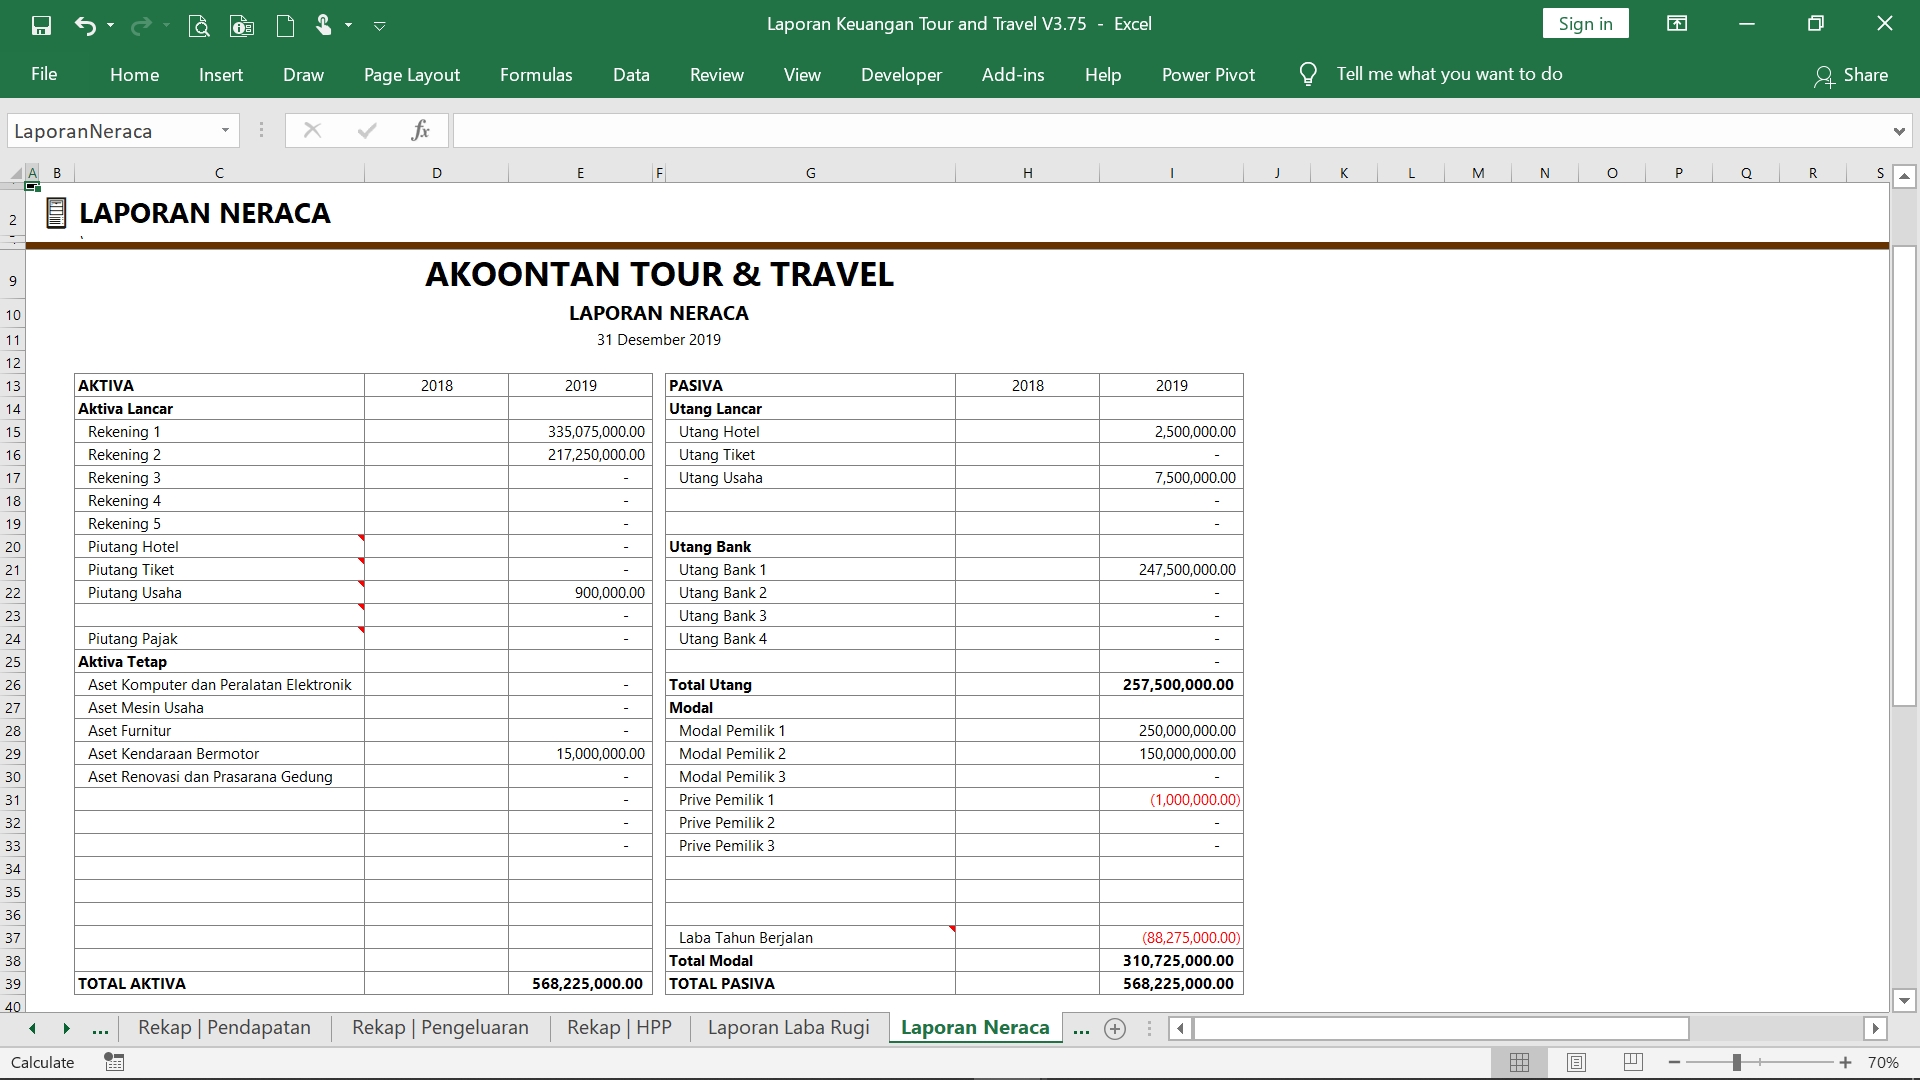 Ak026 Aw Xl Laporan Keuangan Tour Travel Akoontan